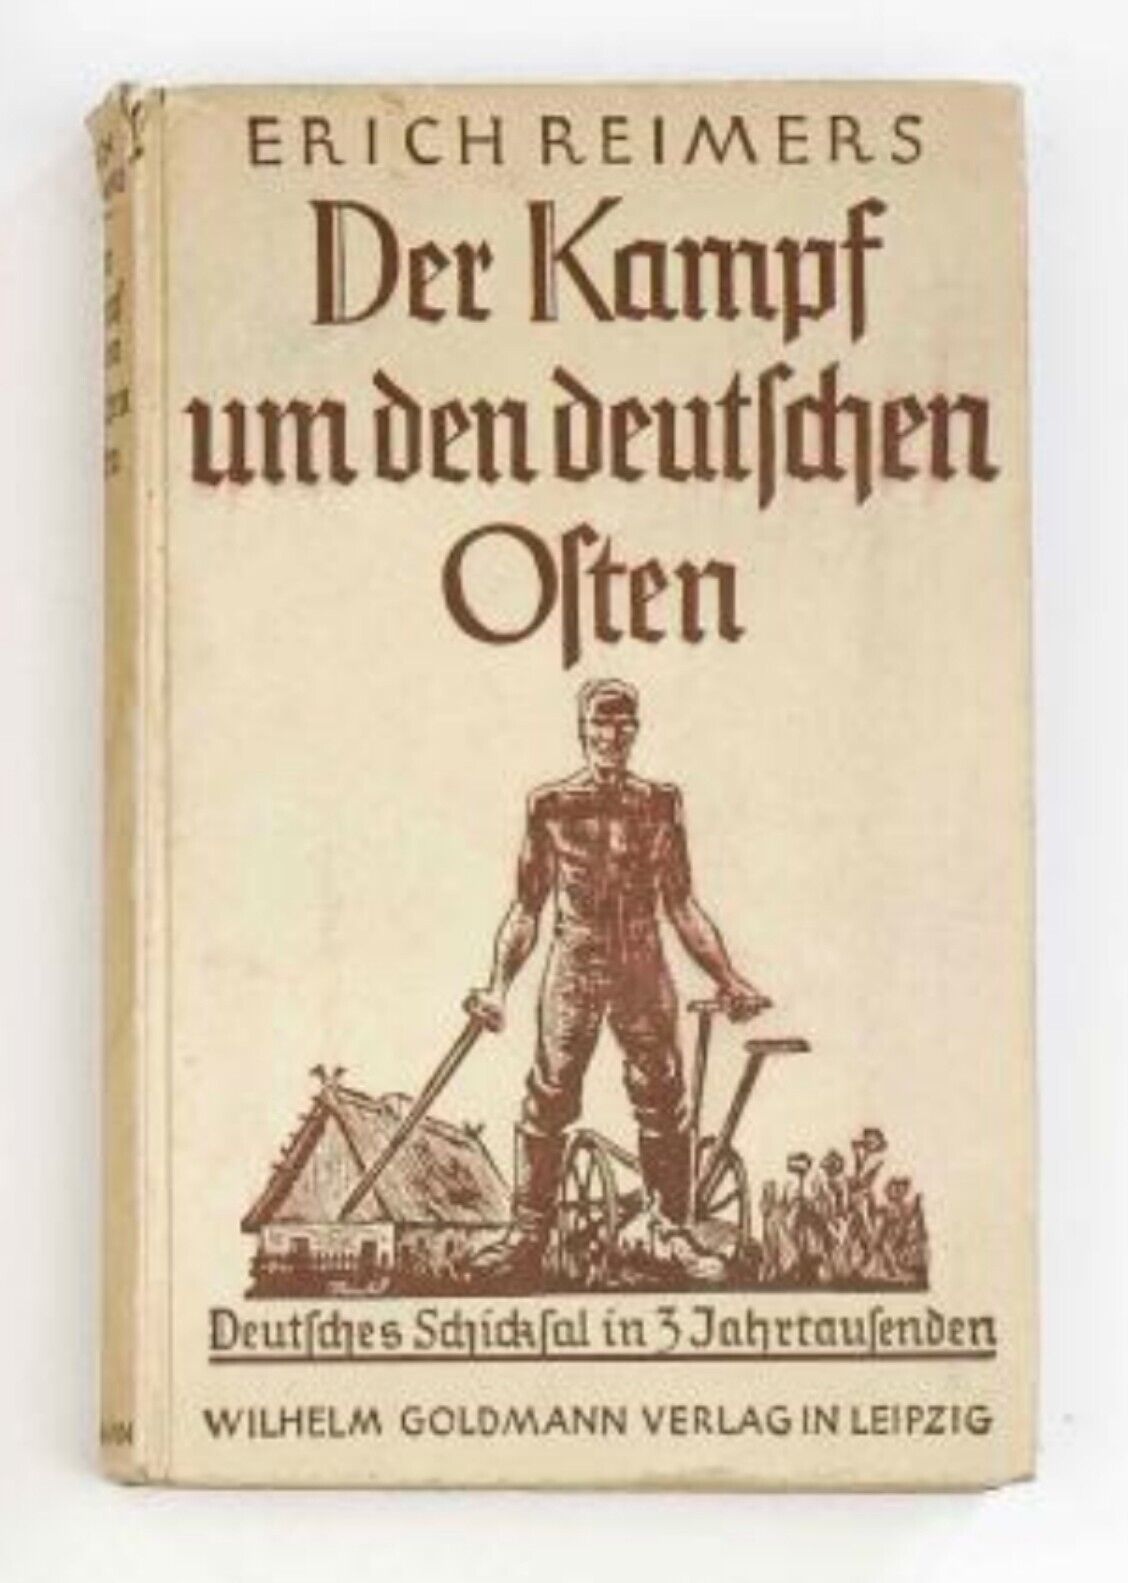 RARE Der Kampf um den deutschen Osten Erich Reimers Vintage WW2 Era German Book